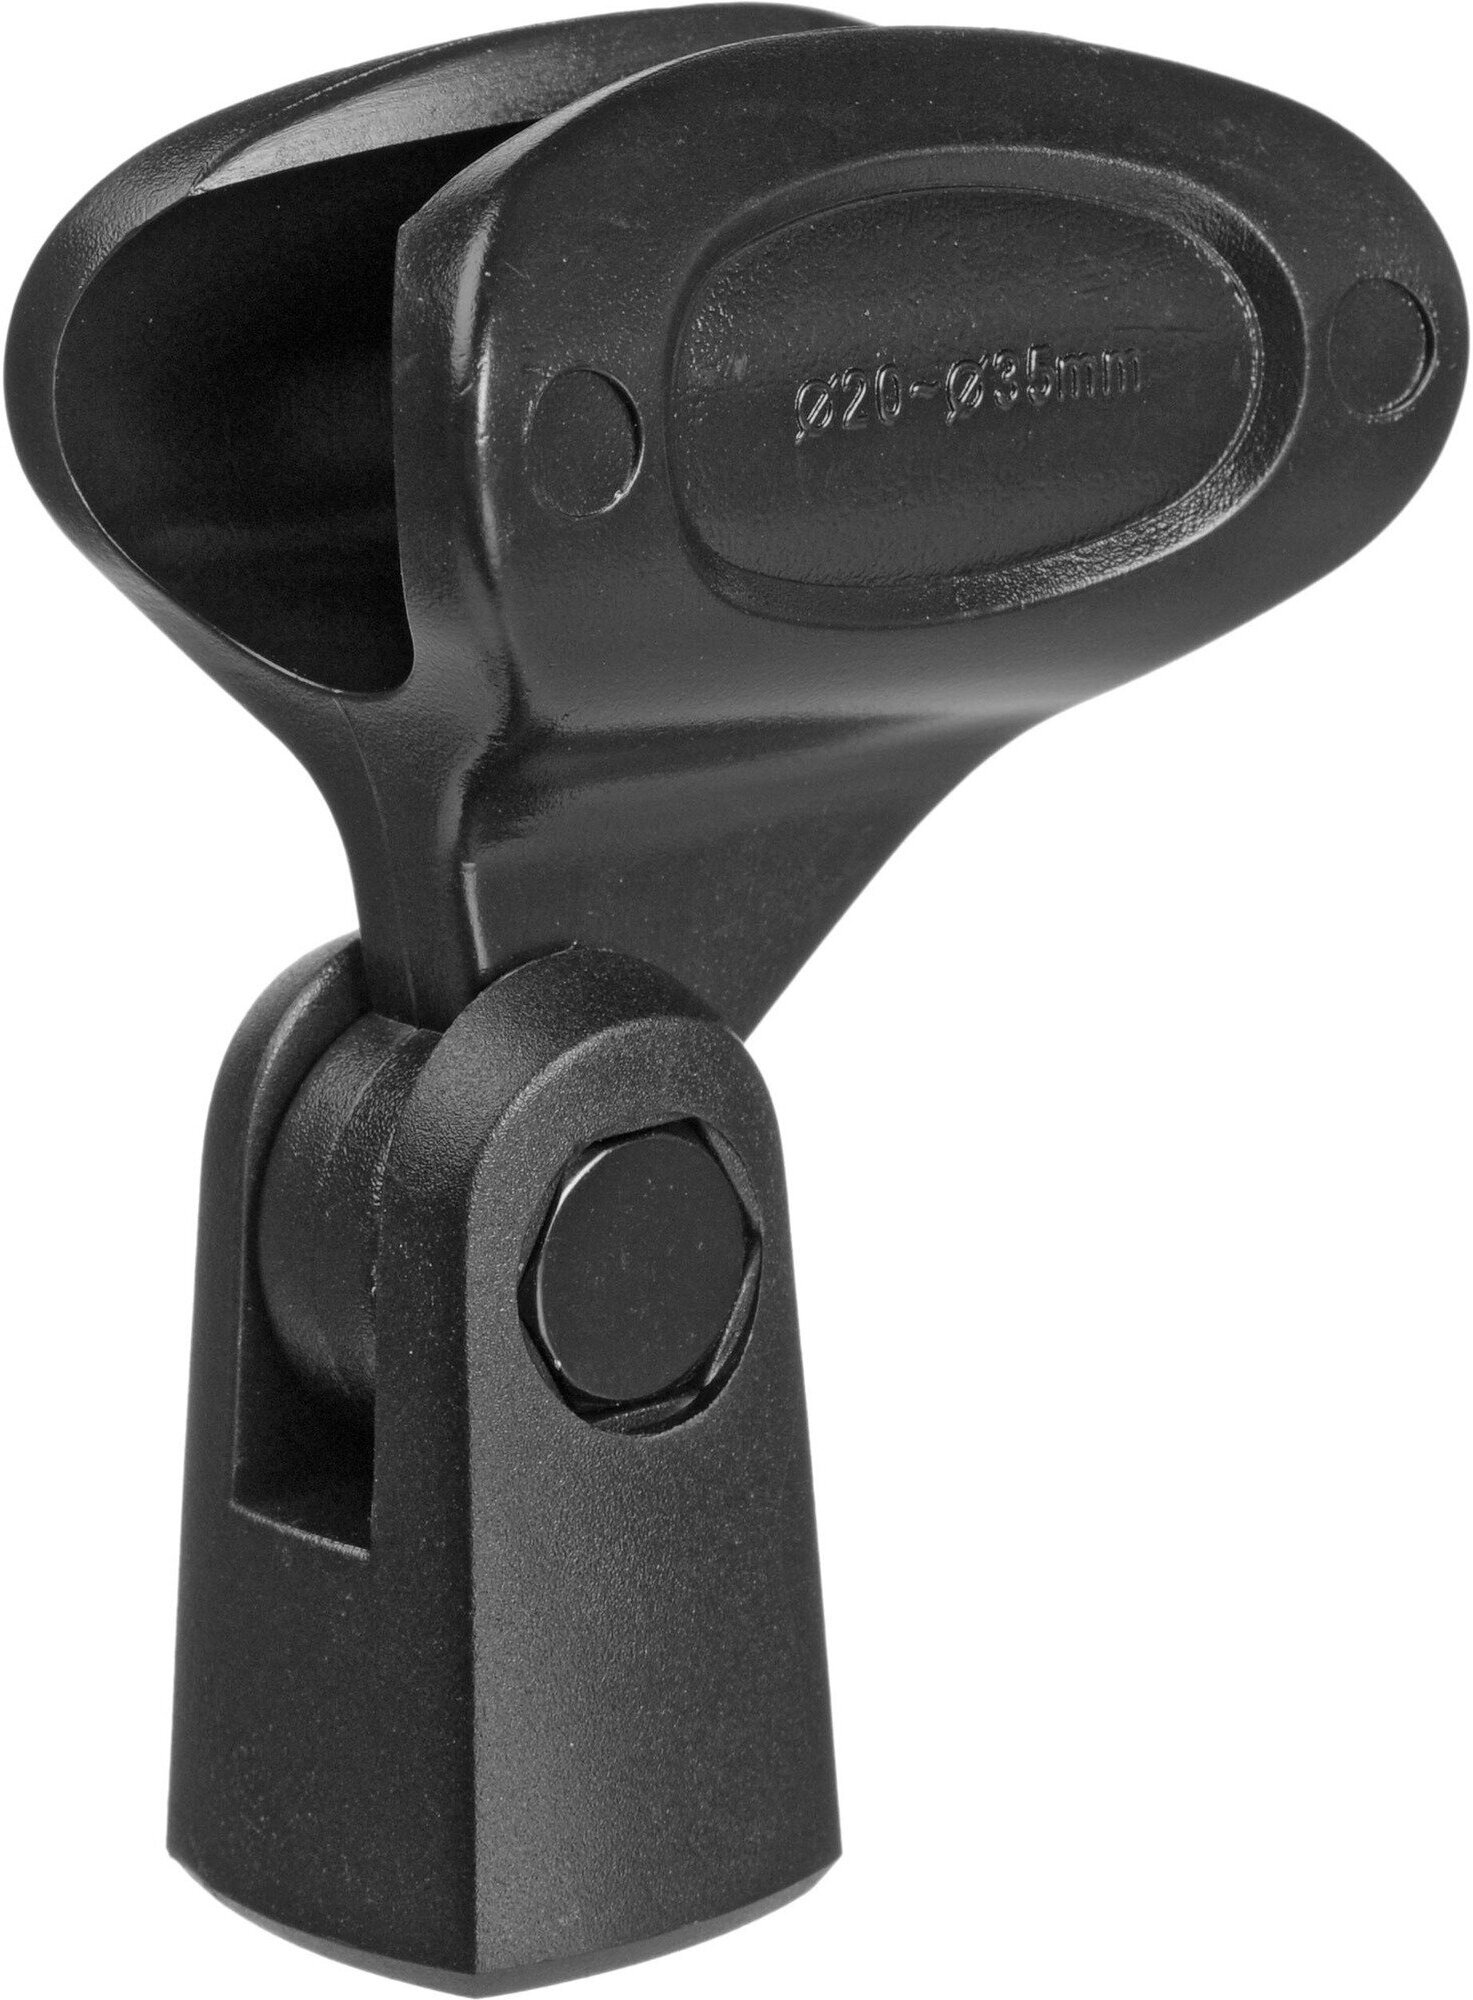 Behringer XM8500 Вокальный кардиоидный динамический микрофон